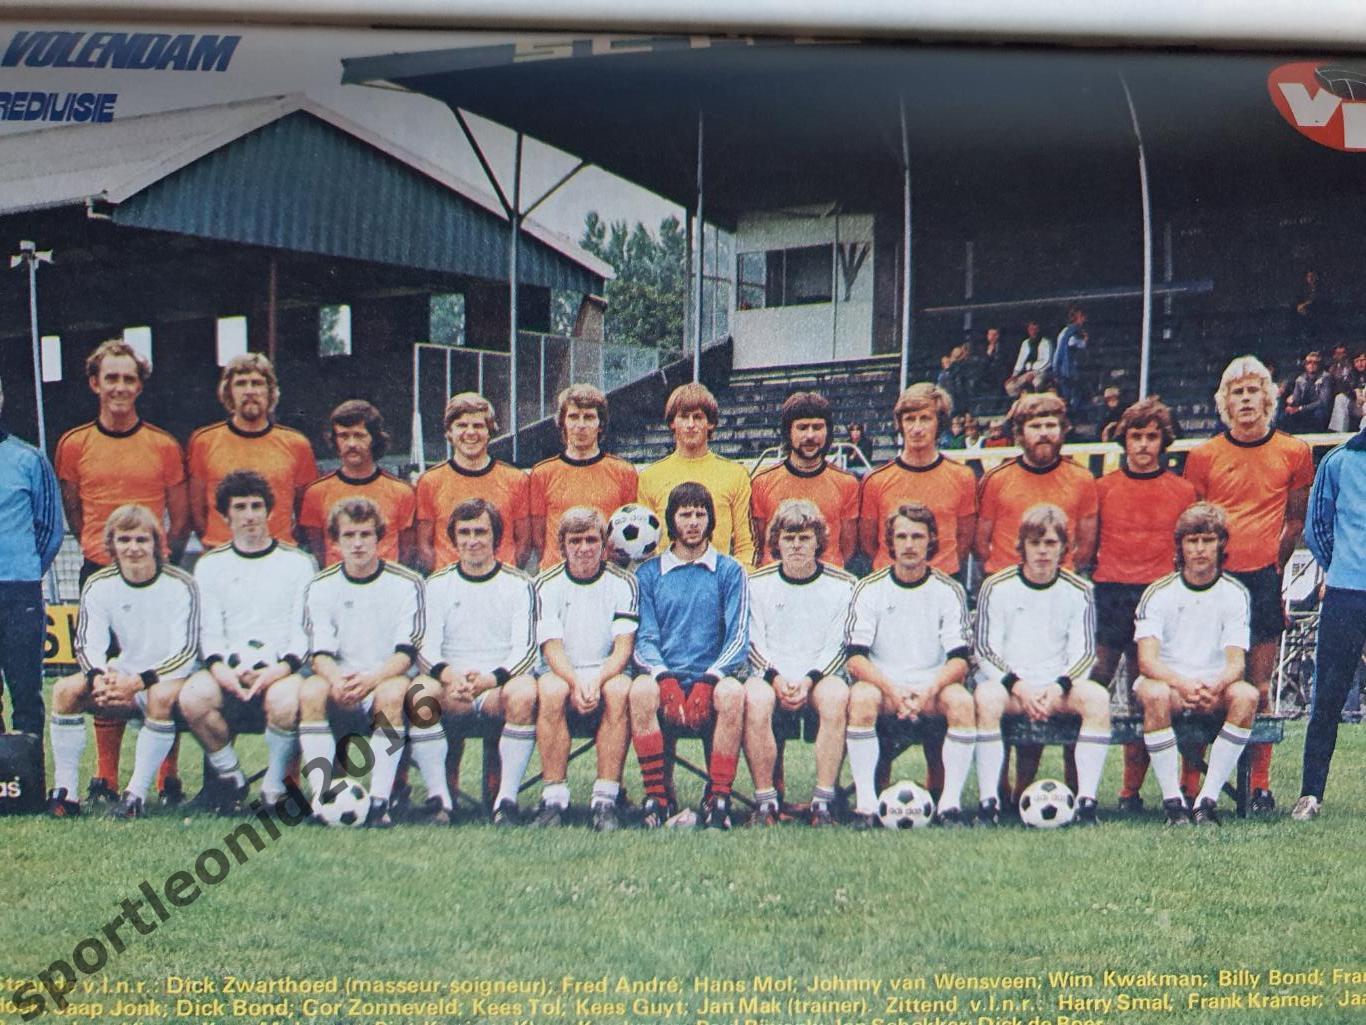 Voetbal International 1977 51 выпуск годовая подписка .3 7